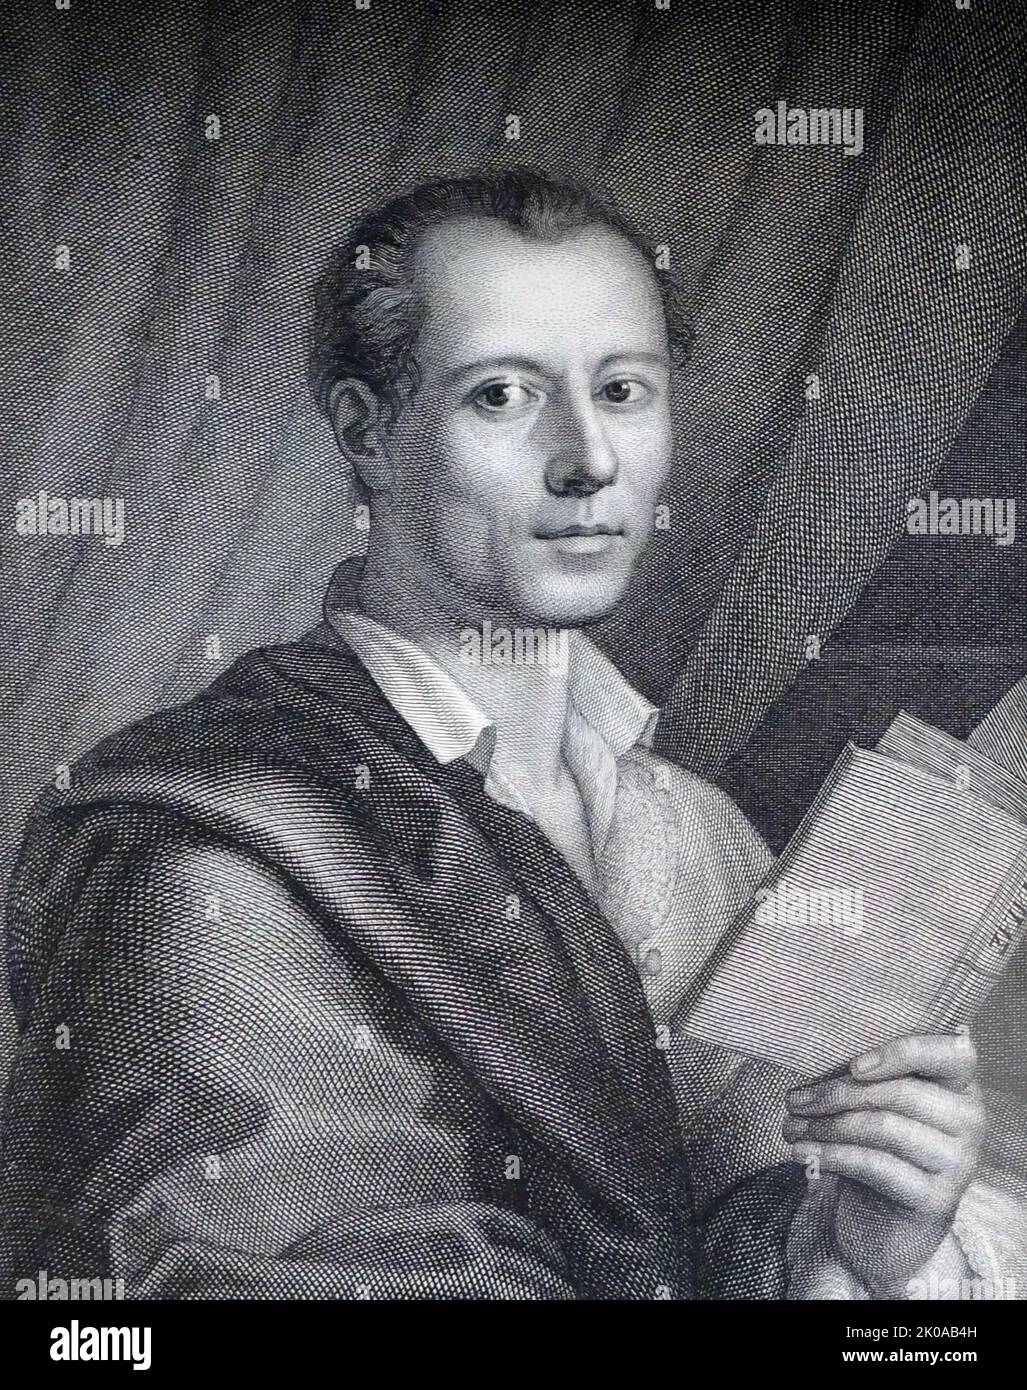 Stich von Johann Joachim Winckelmann, dem Gründungsvater der Klassischen Archäologie. Johann Joachim Winckelmann (9. Dezember 1717 - 8. Juni 1768) war ein deutscher Kunsthistoriker und Archäologe Stockfoto